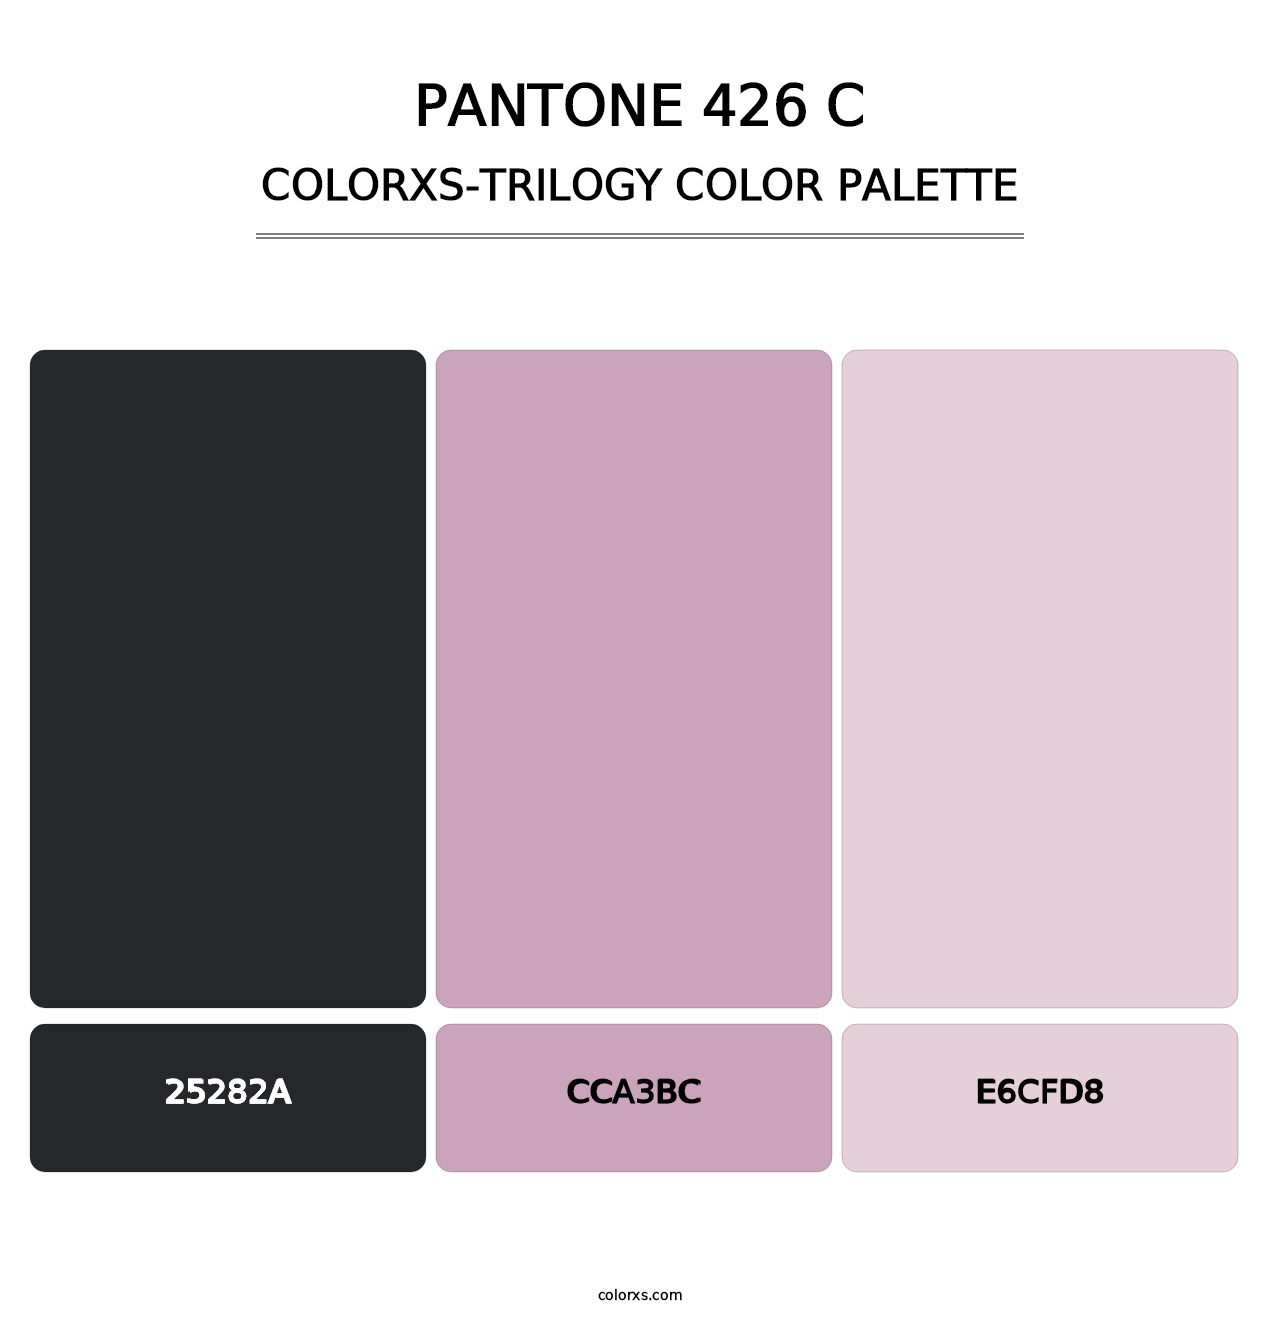 PANTONE 426 C - Colorxs Trilogy Palette